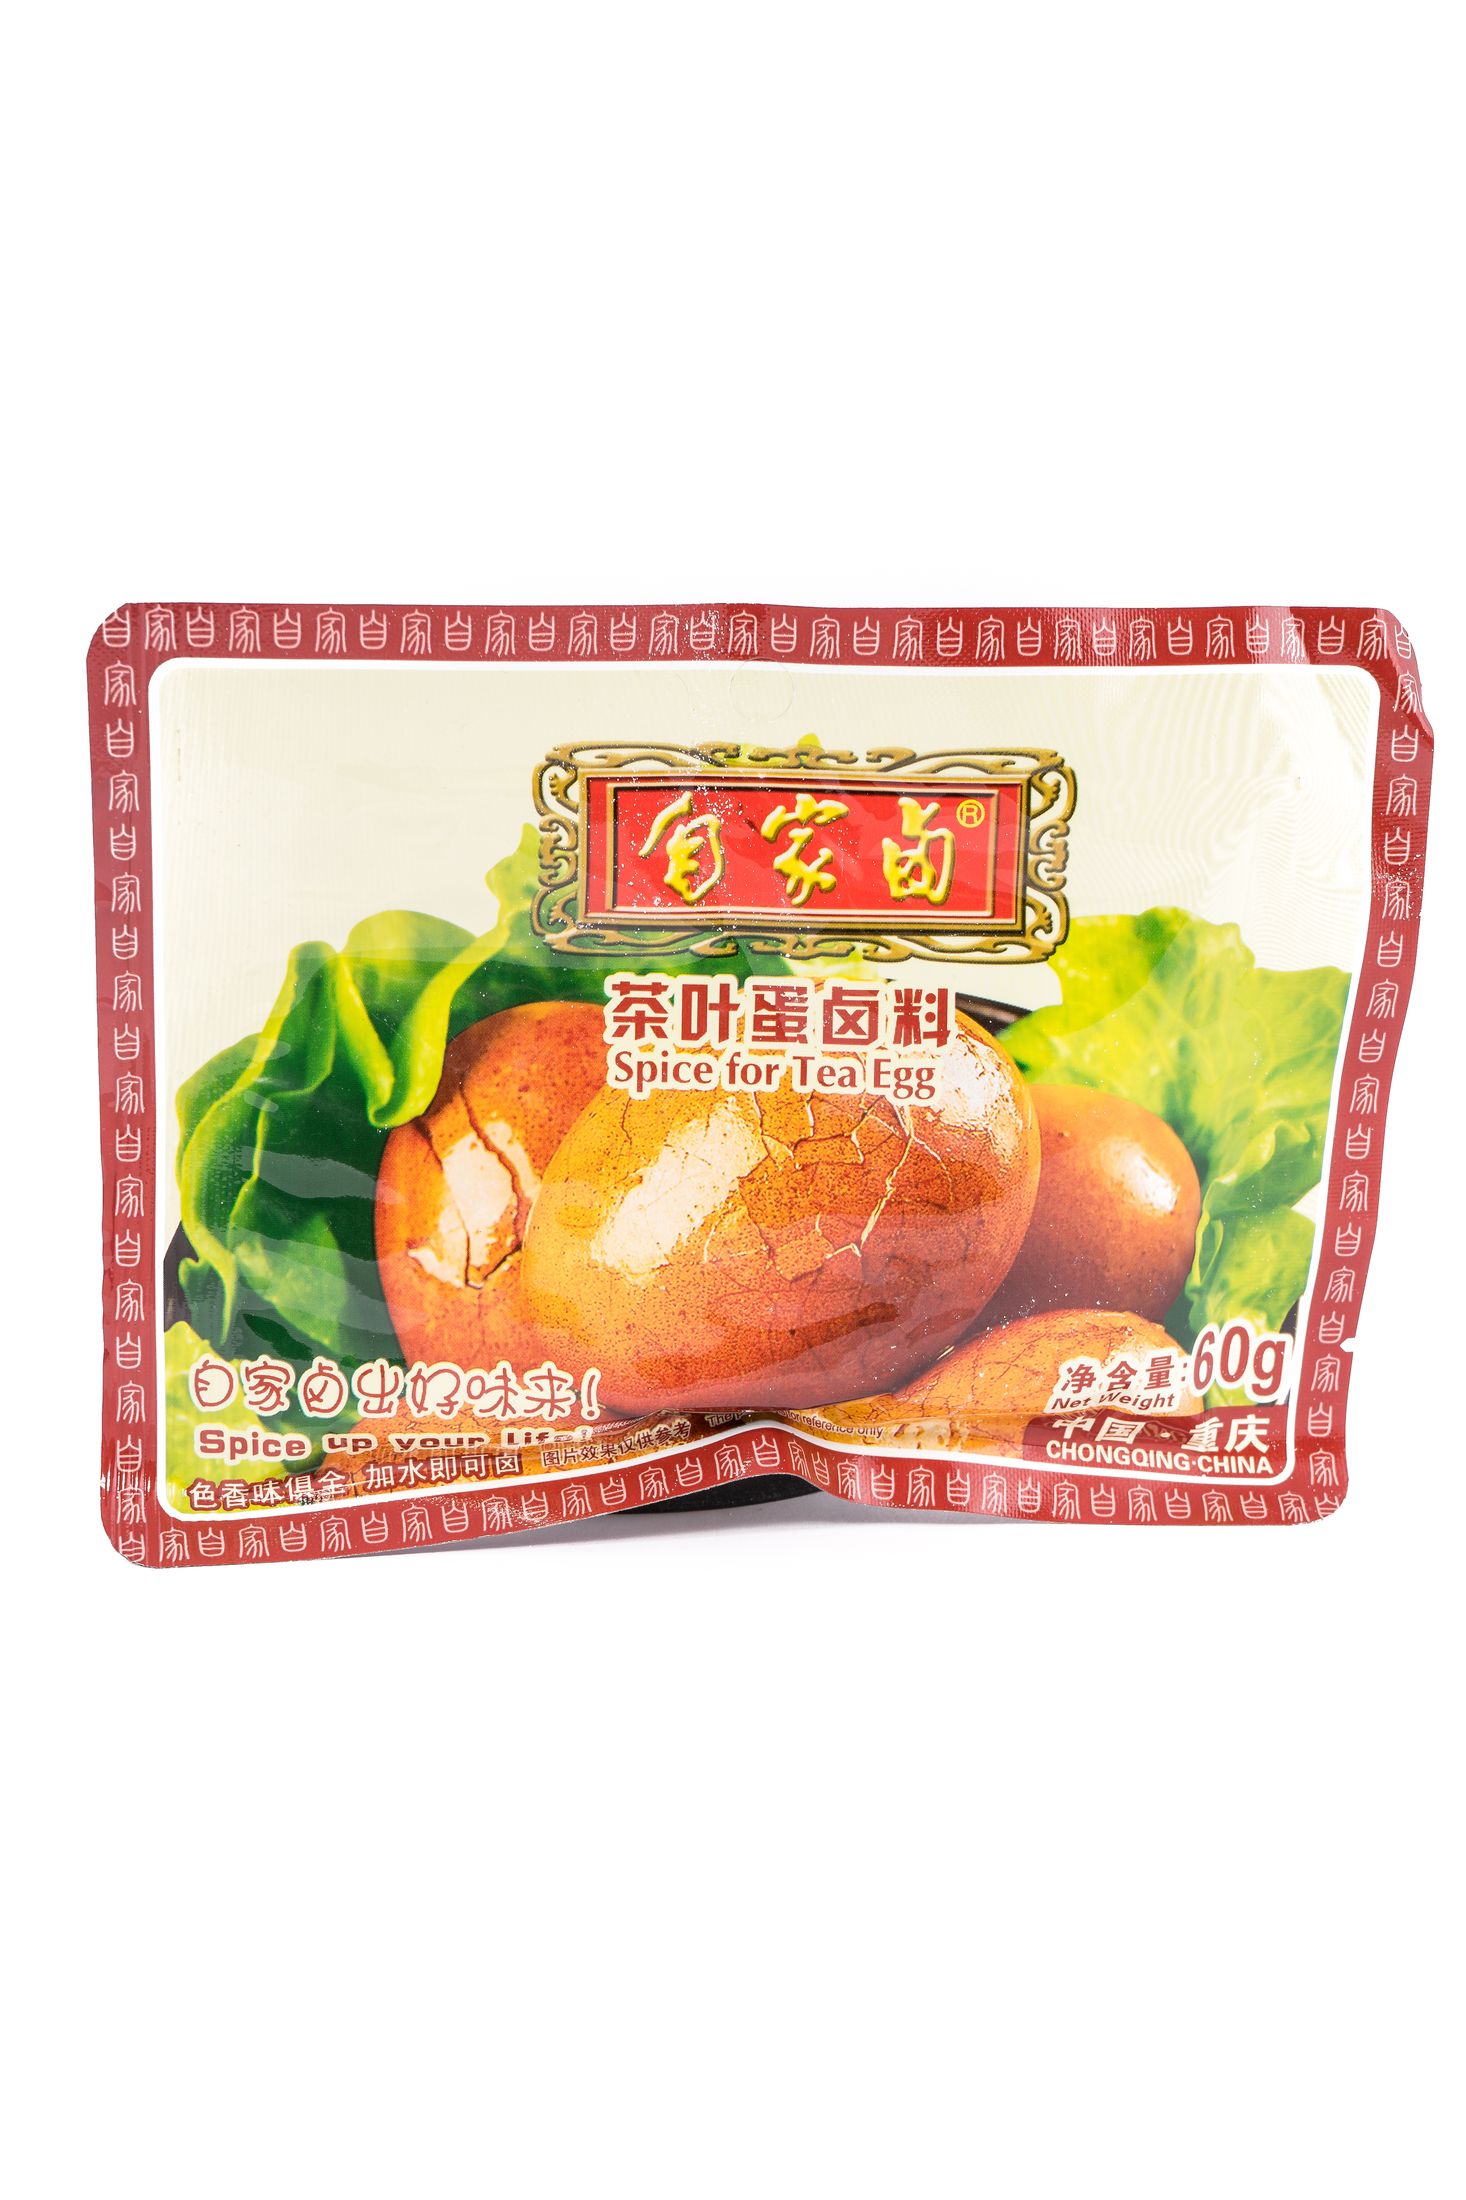 Zi Jia Lu  Marinated spice for tea egg